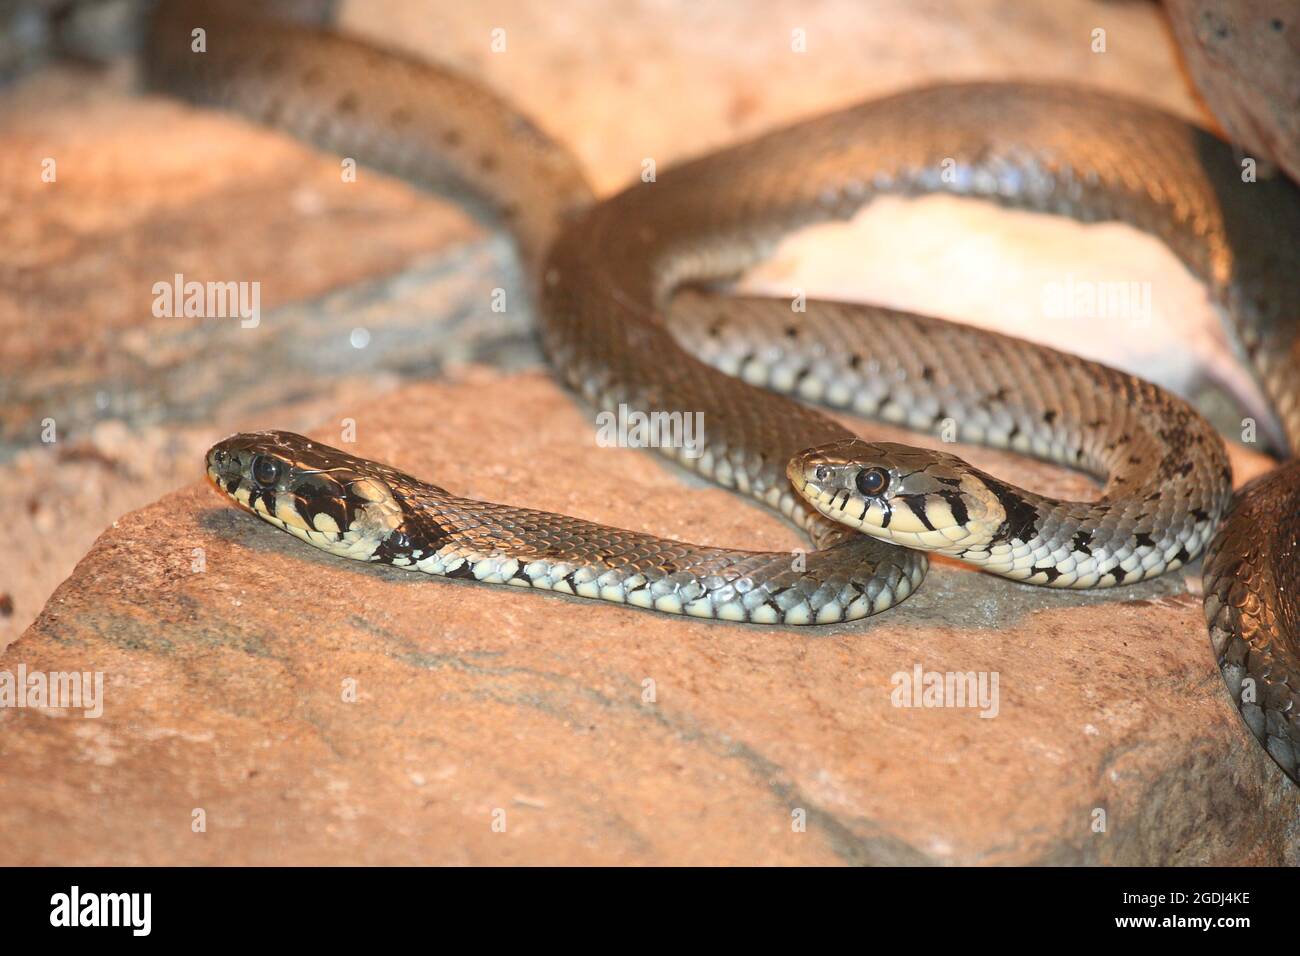 Ringelnatter / Grass snake / Natrix natrix Stock Photo